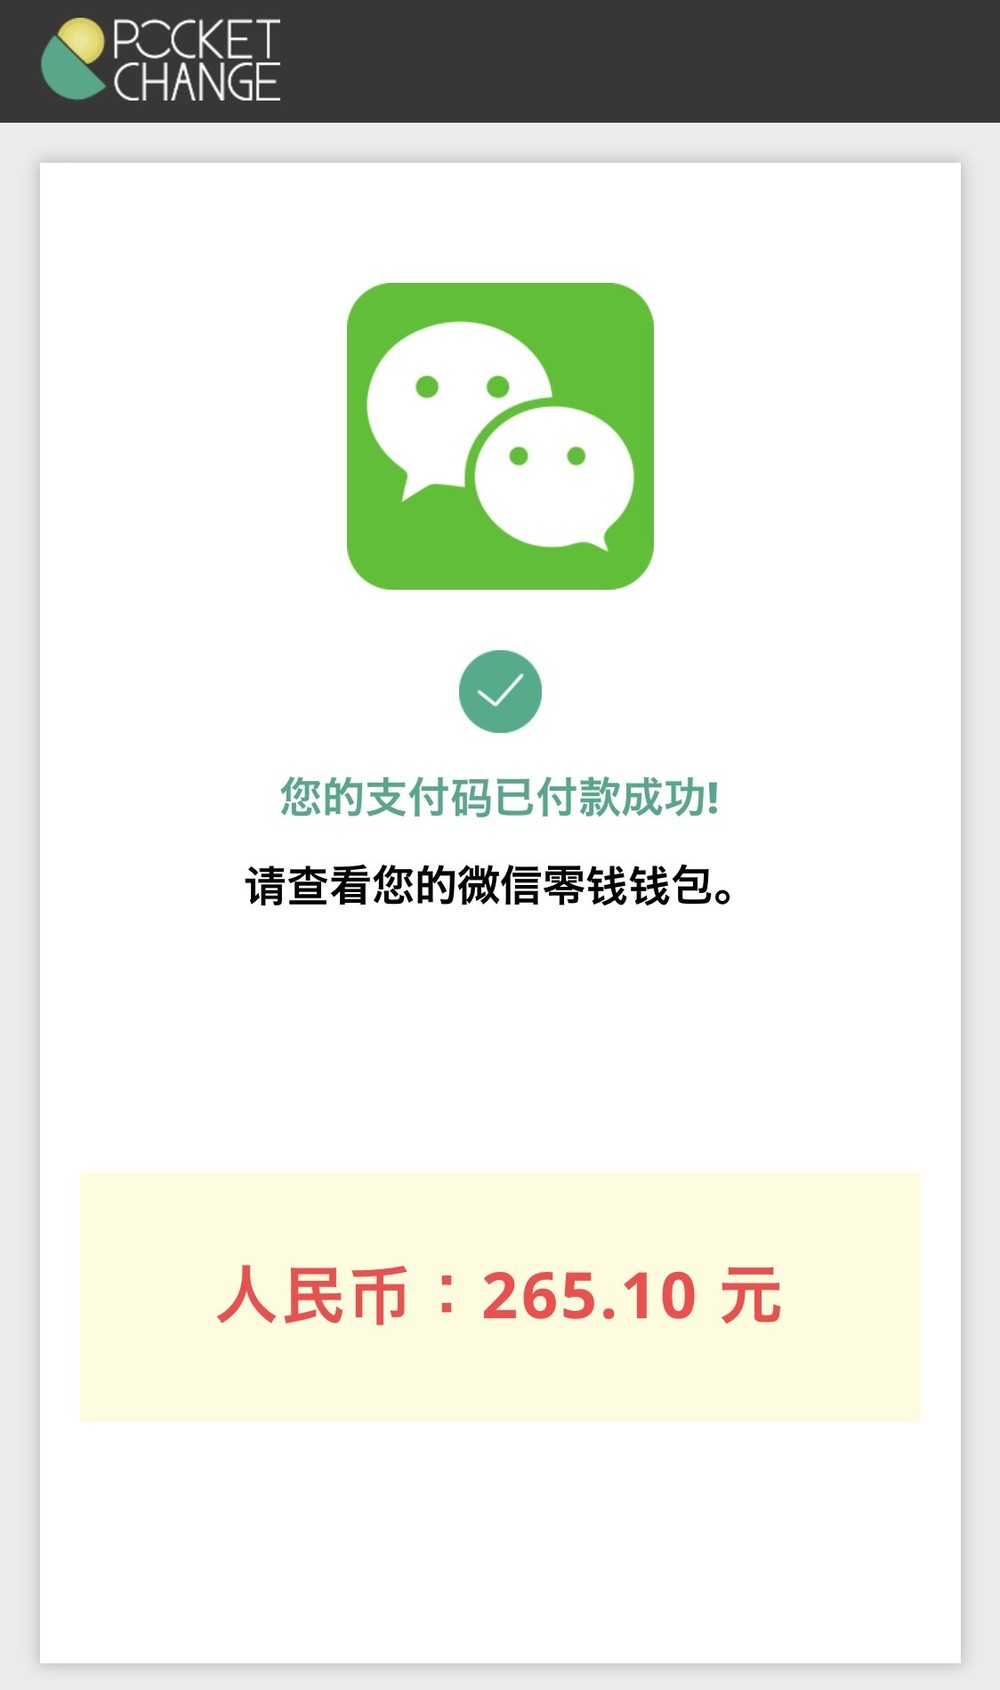 記者は2月27日にポケットチェンジからWeChat Payへのチャージに成功した。翌2月28日頃から異変を訴える声が相次いだ